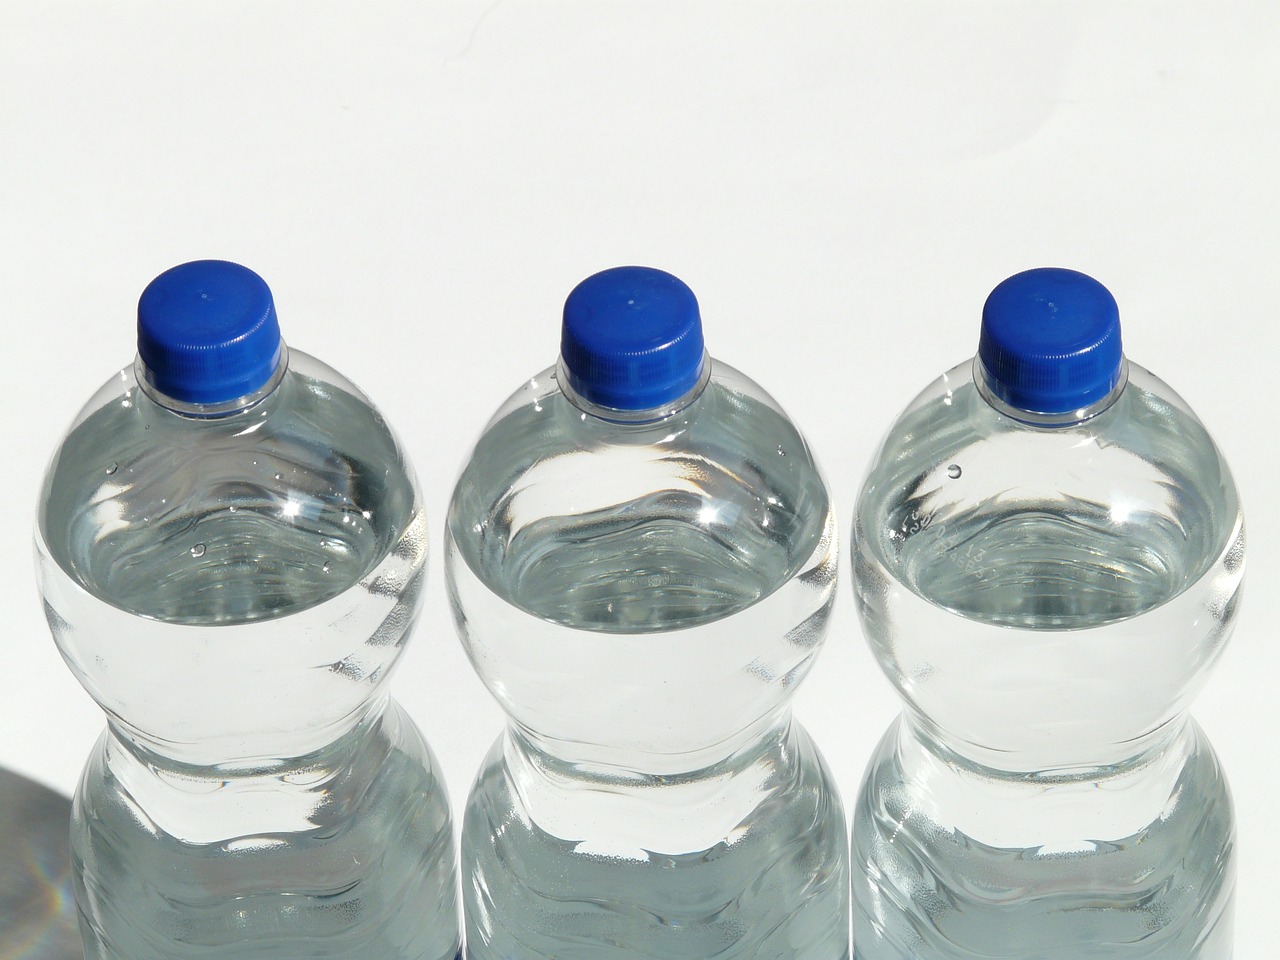 Sécheresse à Mayotte : Le ministre Carenco demande la vente des bouteilles d'eau à prix coûtant